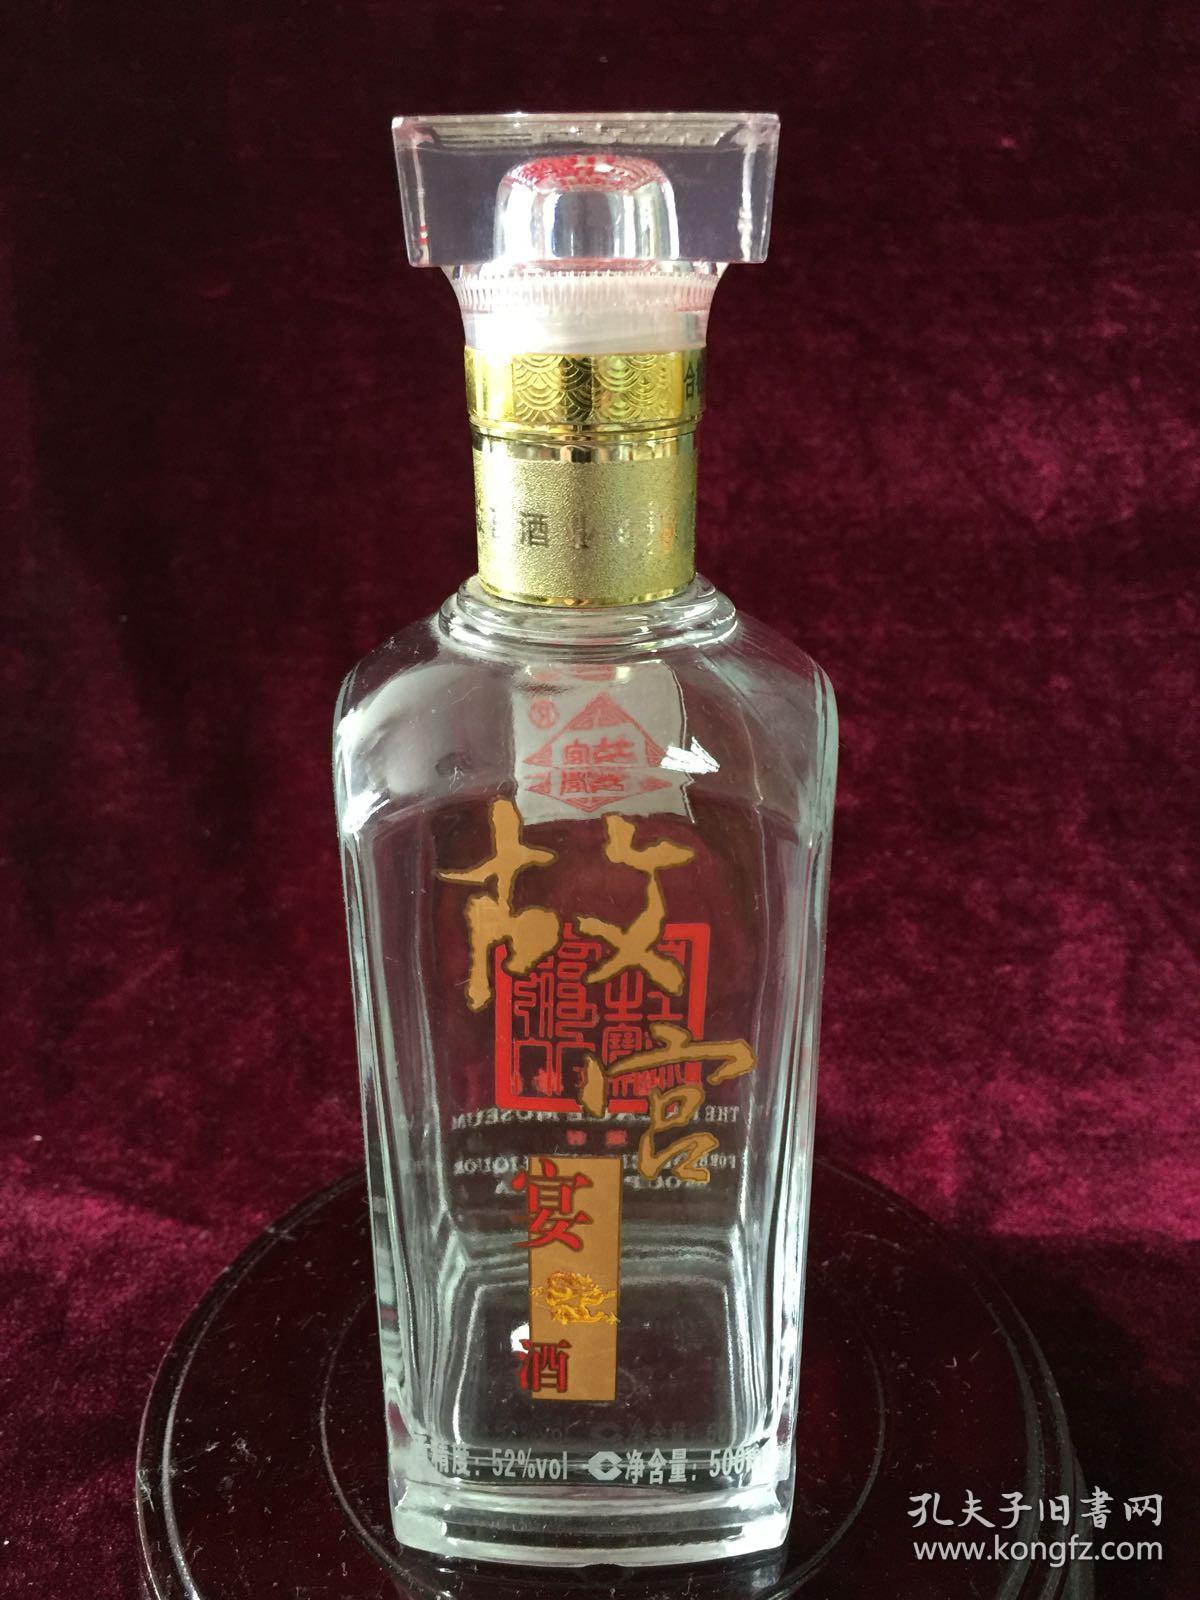 故宫宴酒(空酒瓶)2011年 52度 500毫升(包老包